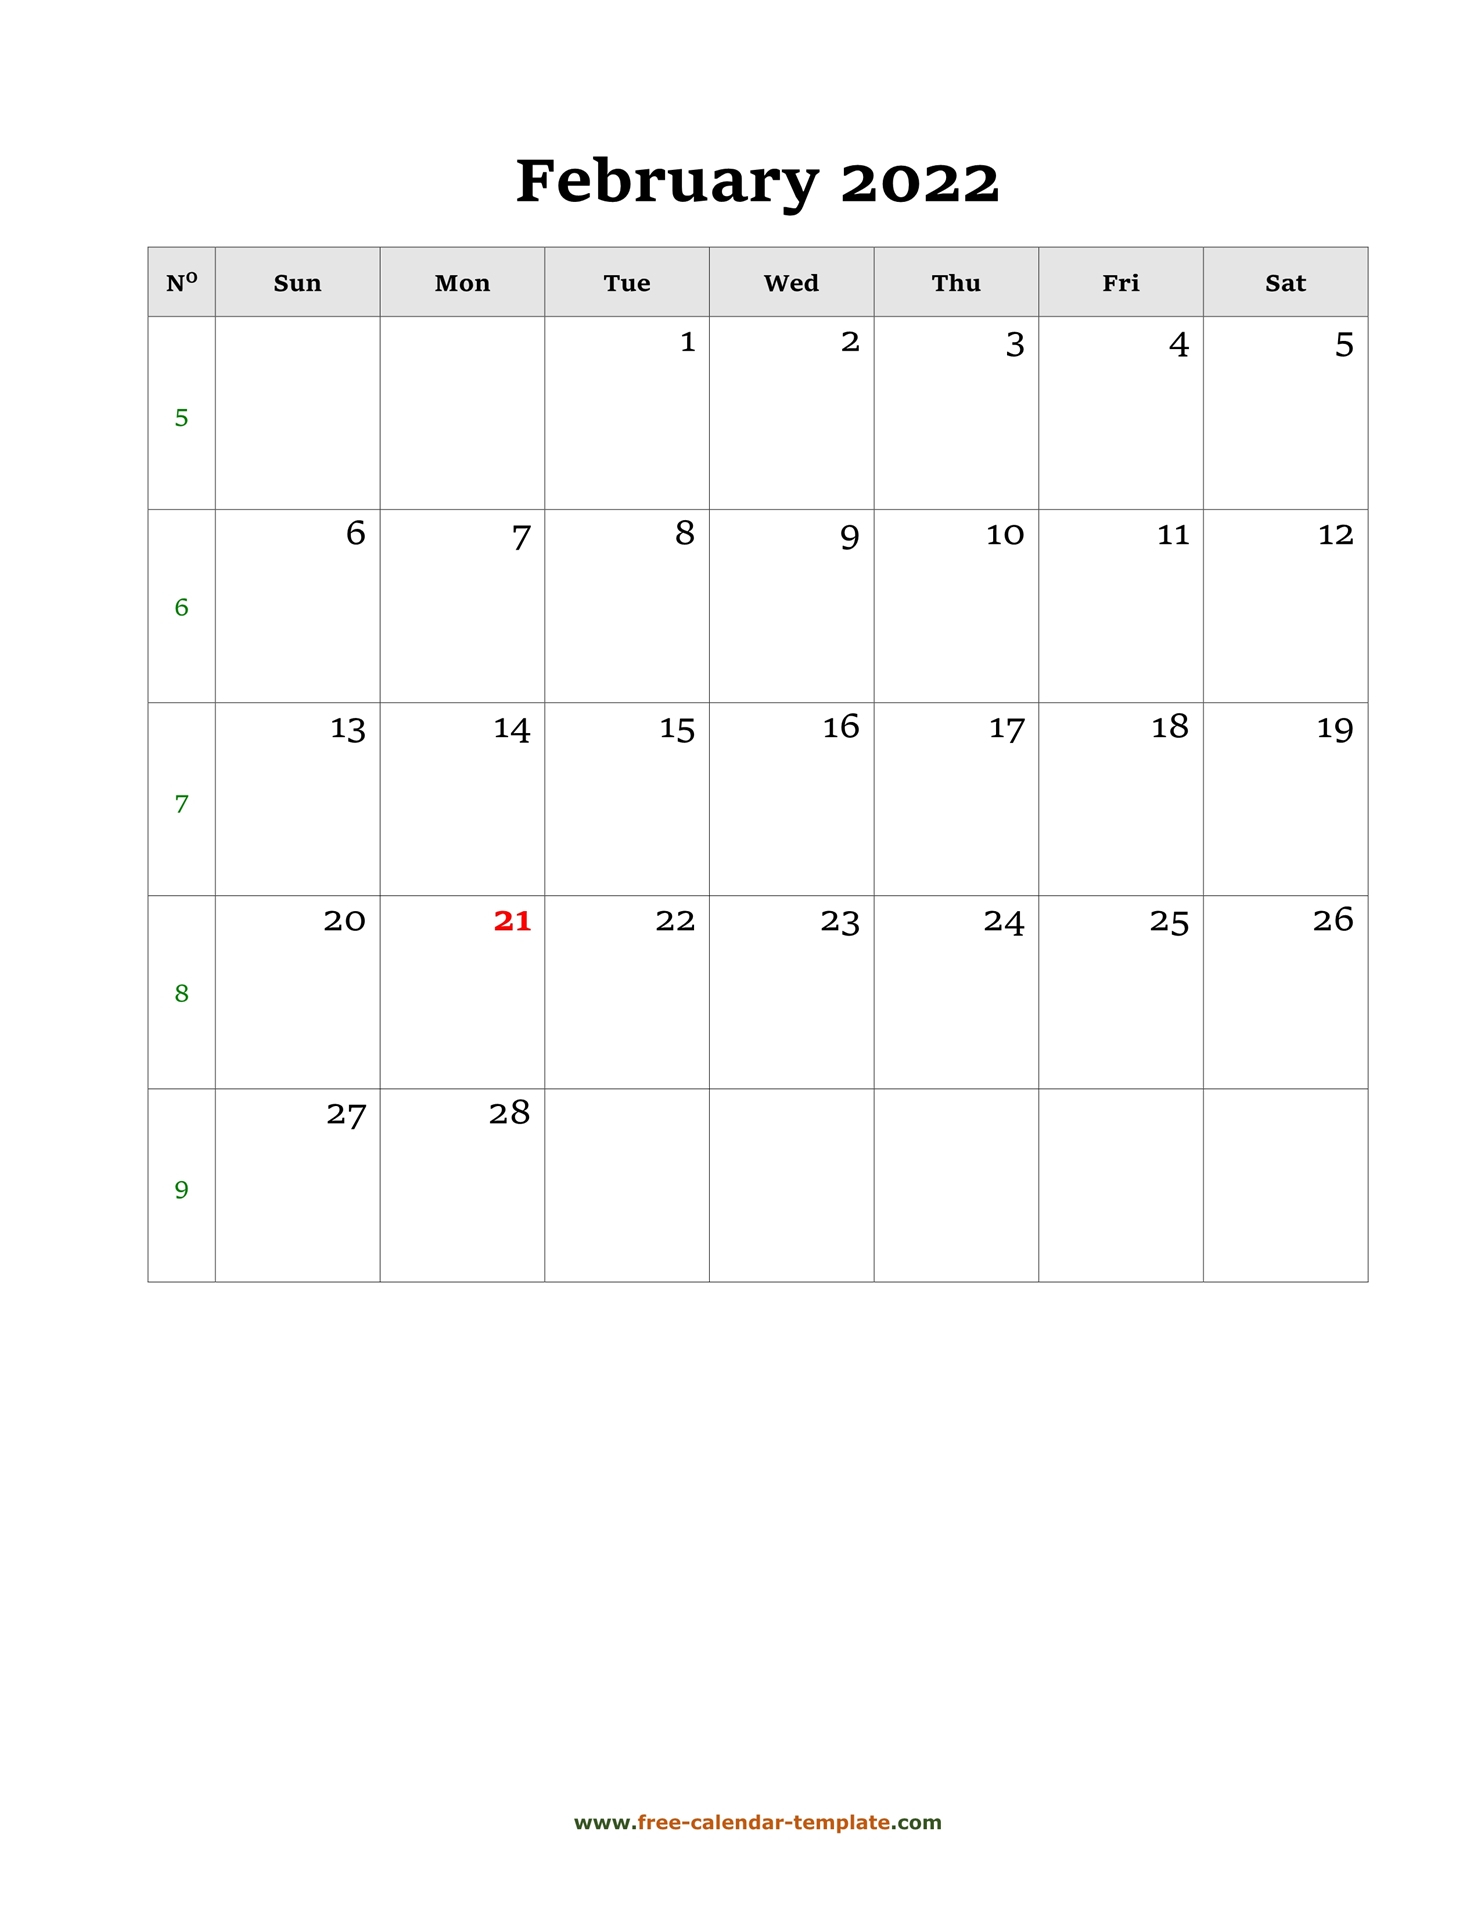 Get Calendar For 2022 February